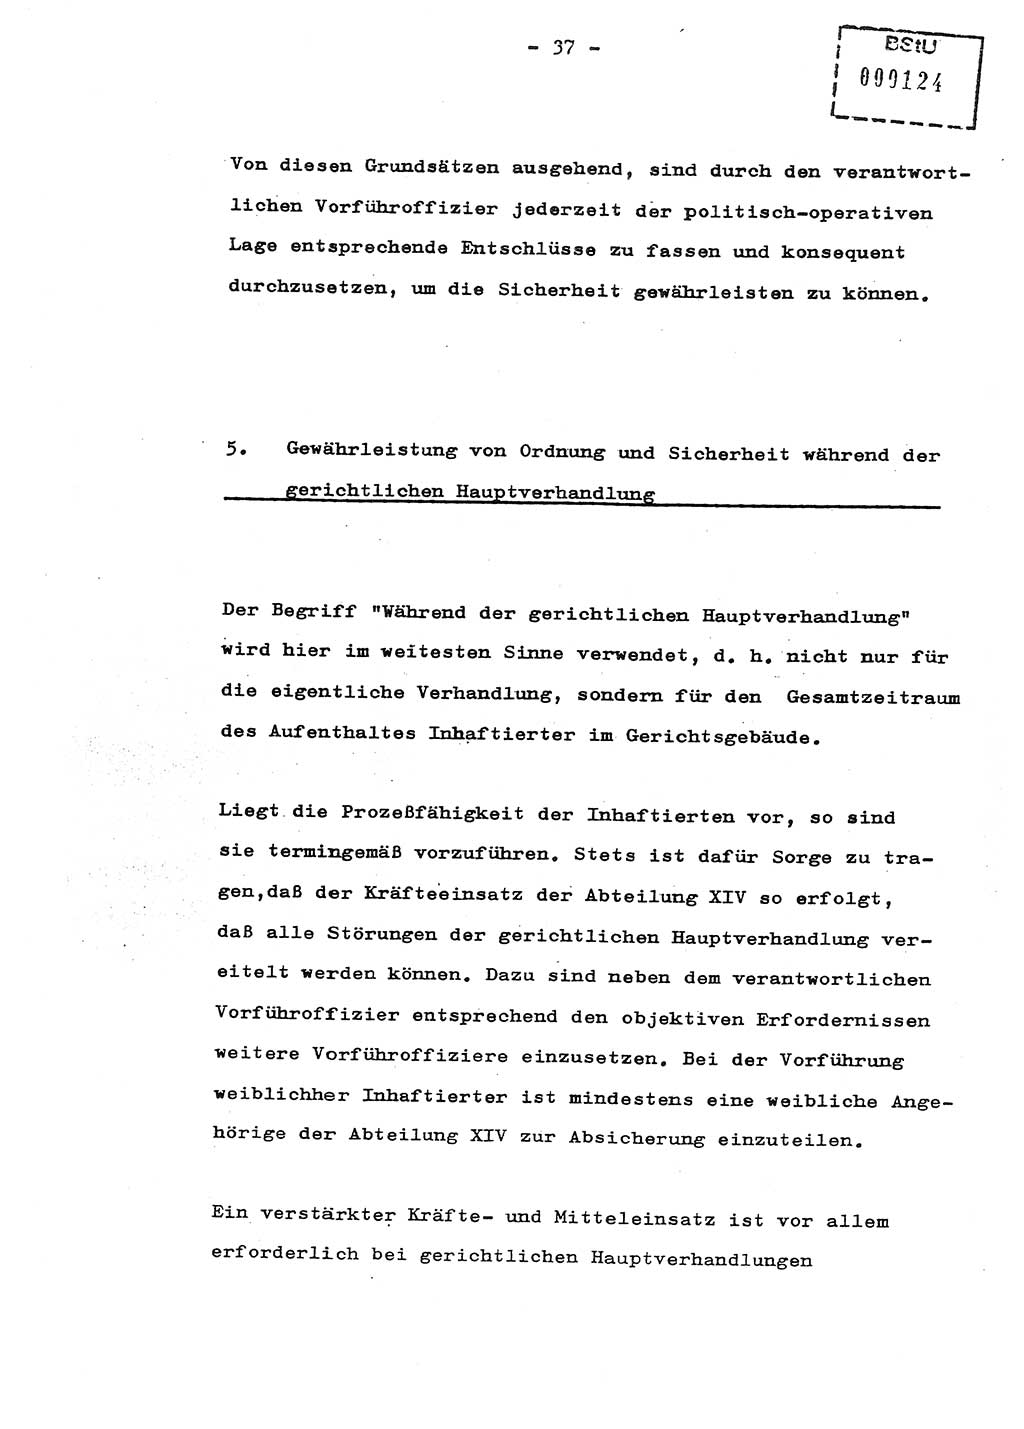 Schulungsmaterial Exemplar-Nr.: 8, Ministerium für Staatssicherheit [Deutsche Demokratische Republik (DDR)], Abteilung (Abt.) ⅩⅣ, Berlin 1987, Seite 37 (Sch.-Mat. Expl. 8 MfS DDR Abt. ⅩⅣ /87 1987, S. 37)